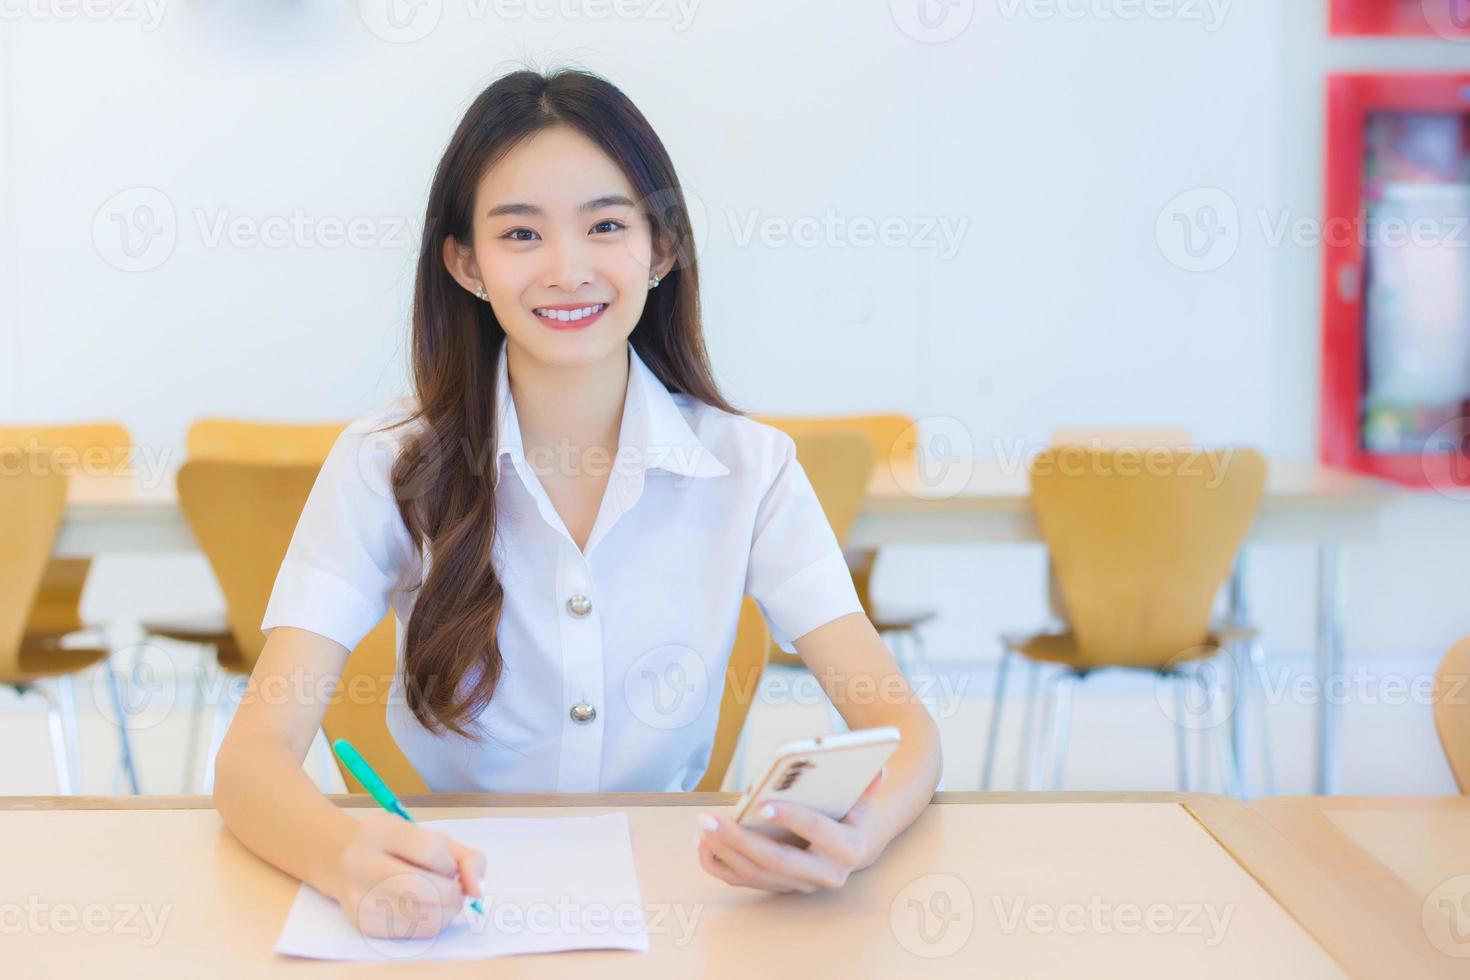 ung asiatisk kvinna studerande i enhetlig använder sig av smartphone och skrivning något handla om jobba där är många dokument på tabell, henne ansikte med leende i en arbetssätt på till Sök information för studie Rapportera foto